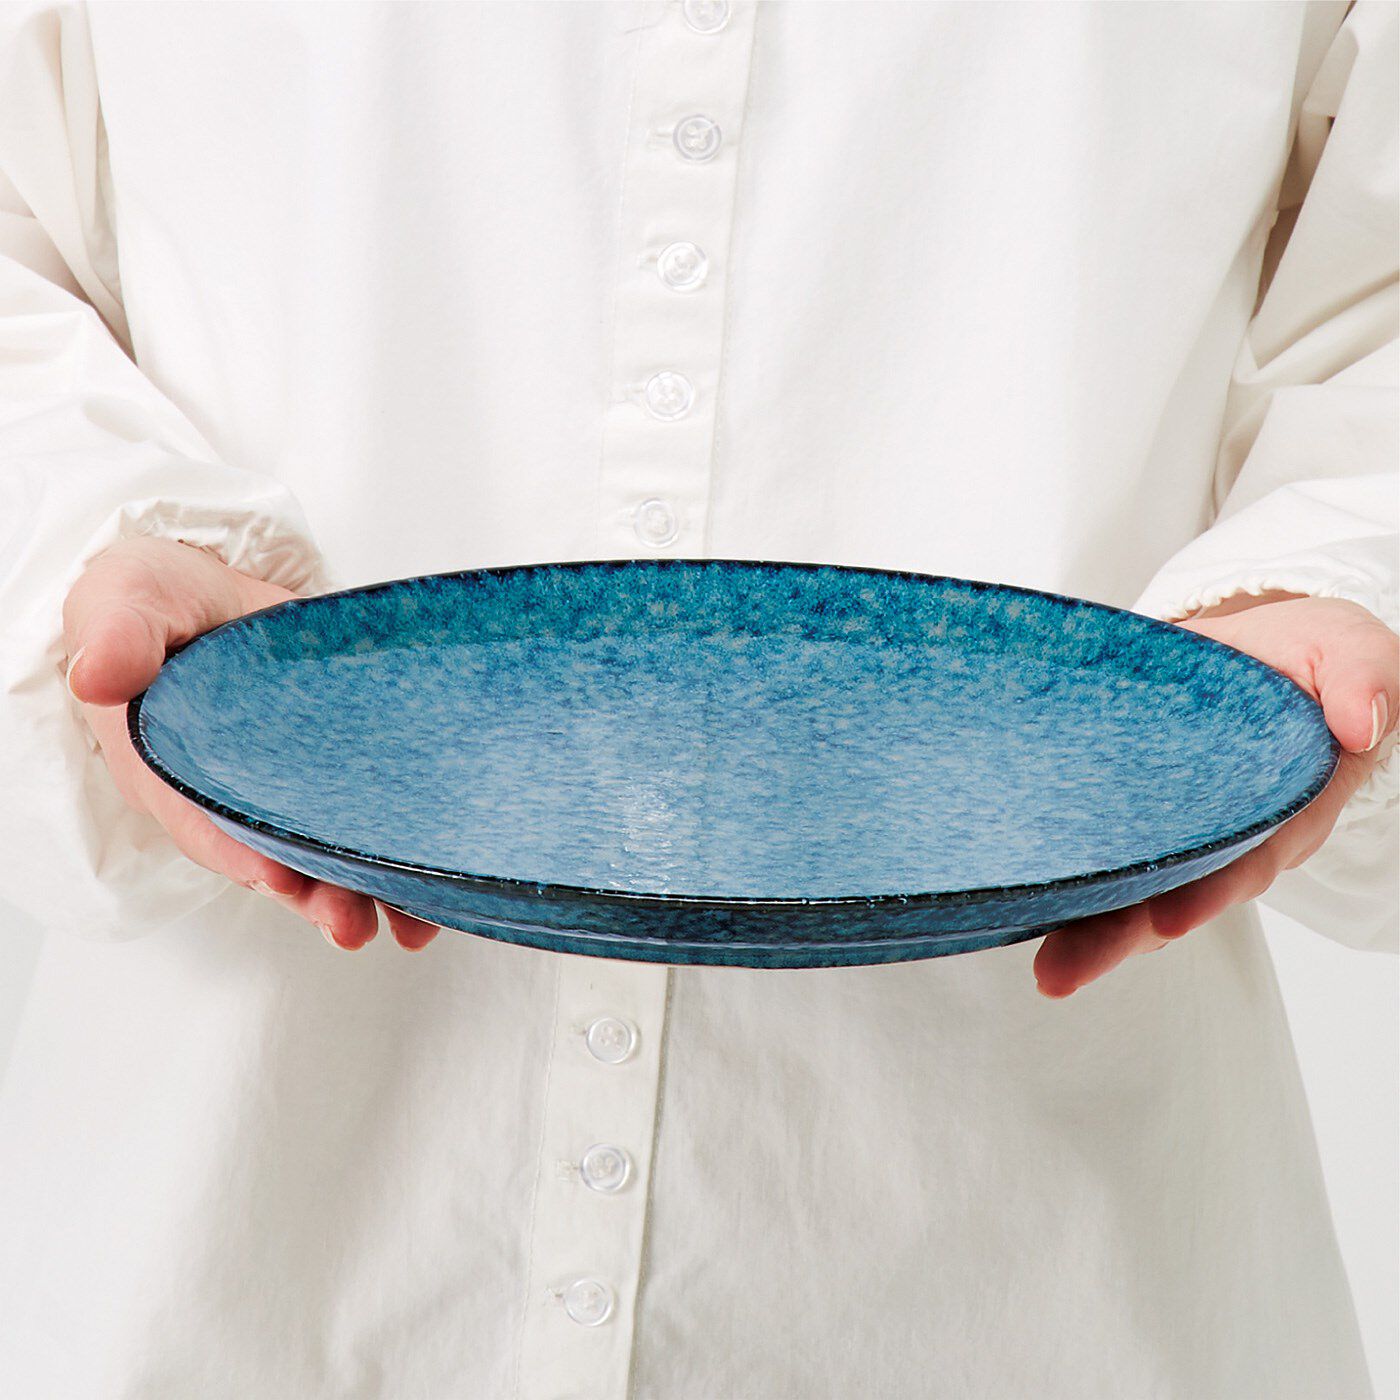 フェリシモコレクション|ちょっと大人になったあの人に贈る お皿と手ぬぐいの食卓応援セット【ラッピングキット付き】|直径約25.5cmの大きめサイズ